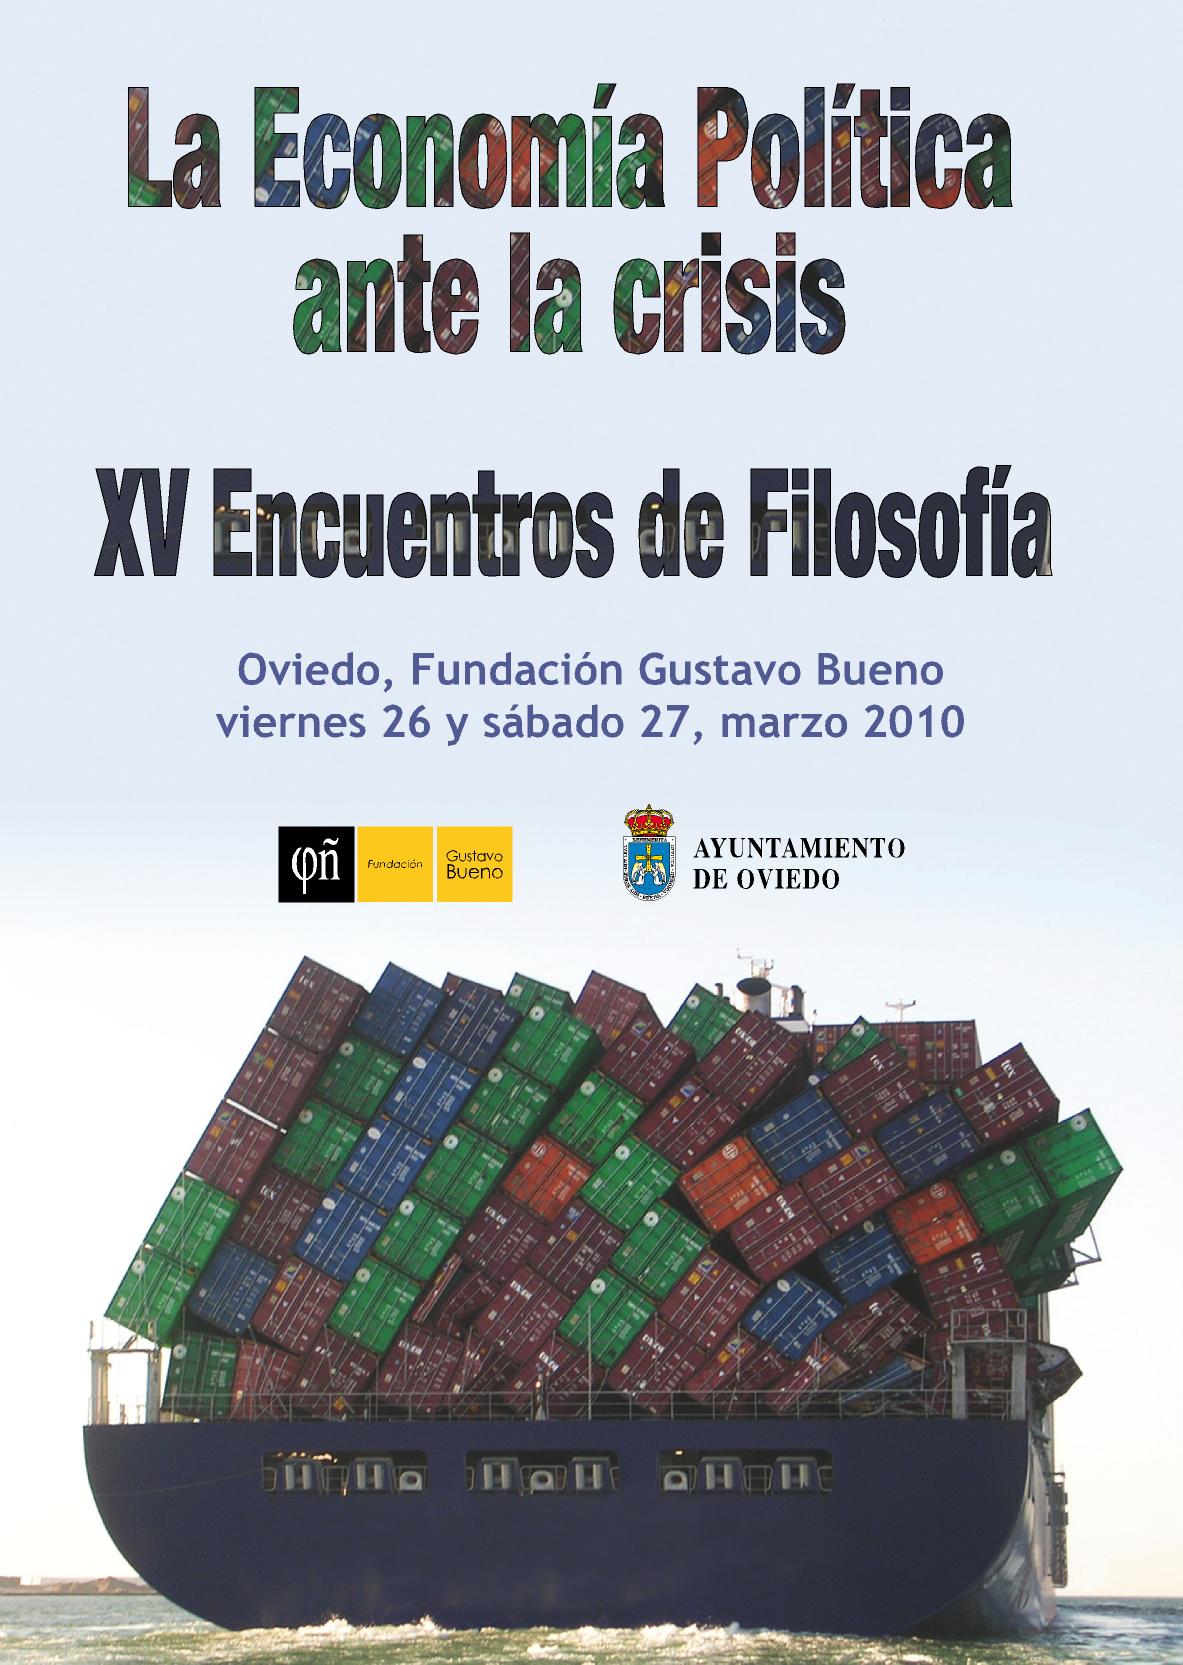 La Economía Política ante la crisis, Oviedo, viernes 26 y sábado 27 de marzo de 2010